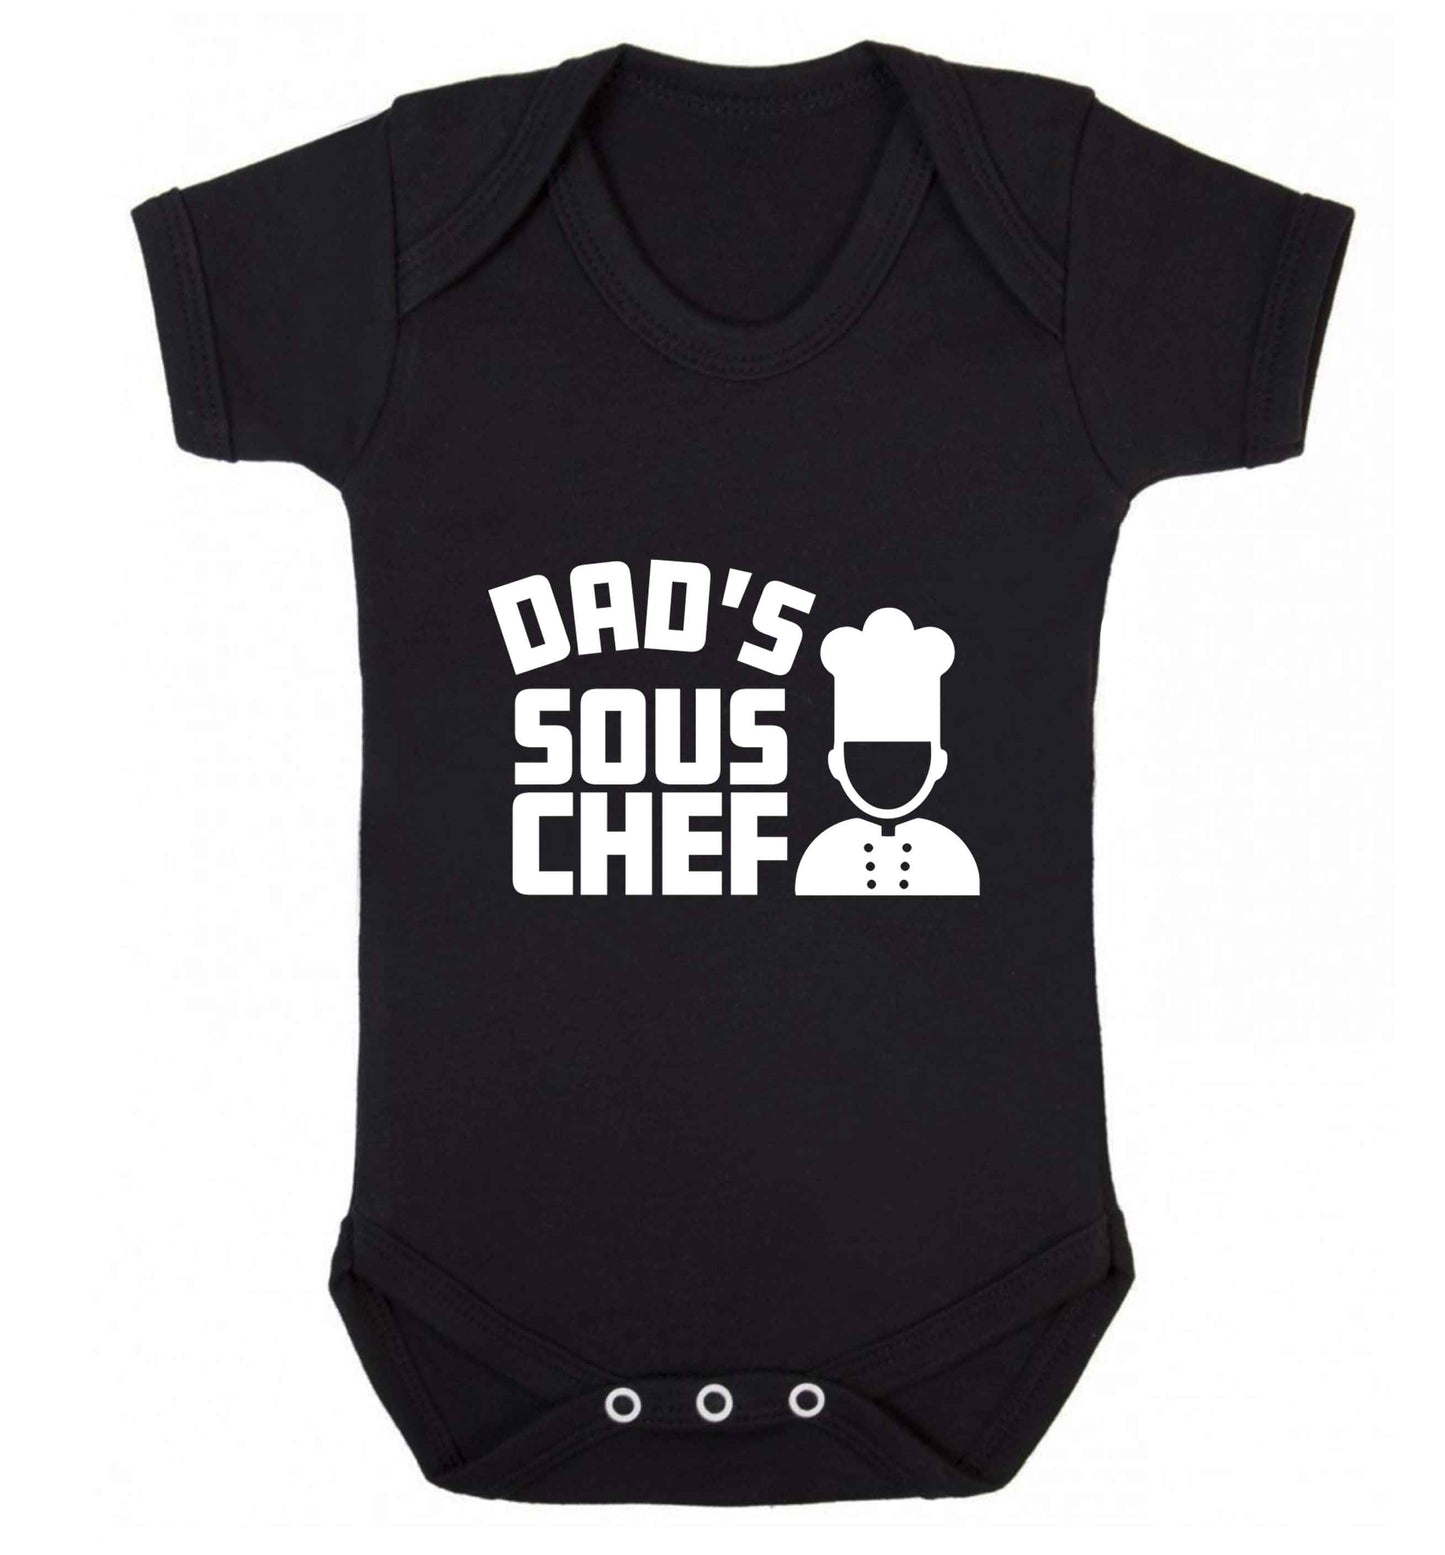 Dad's sous chef baby vest black 18-24 months